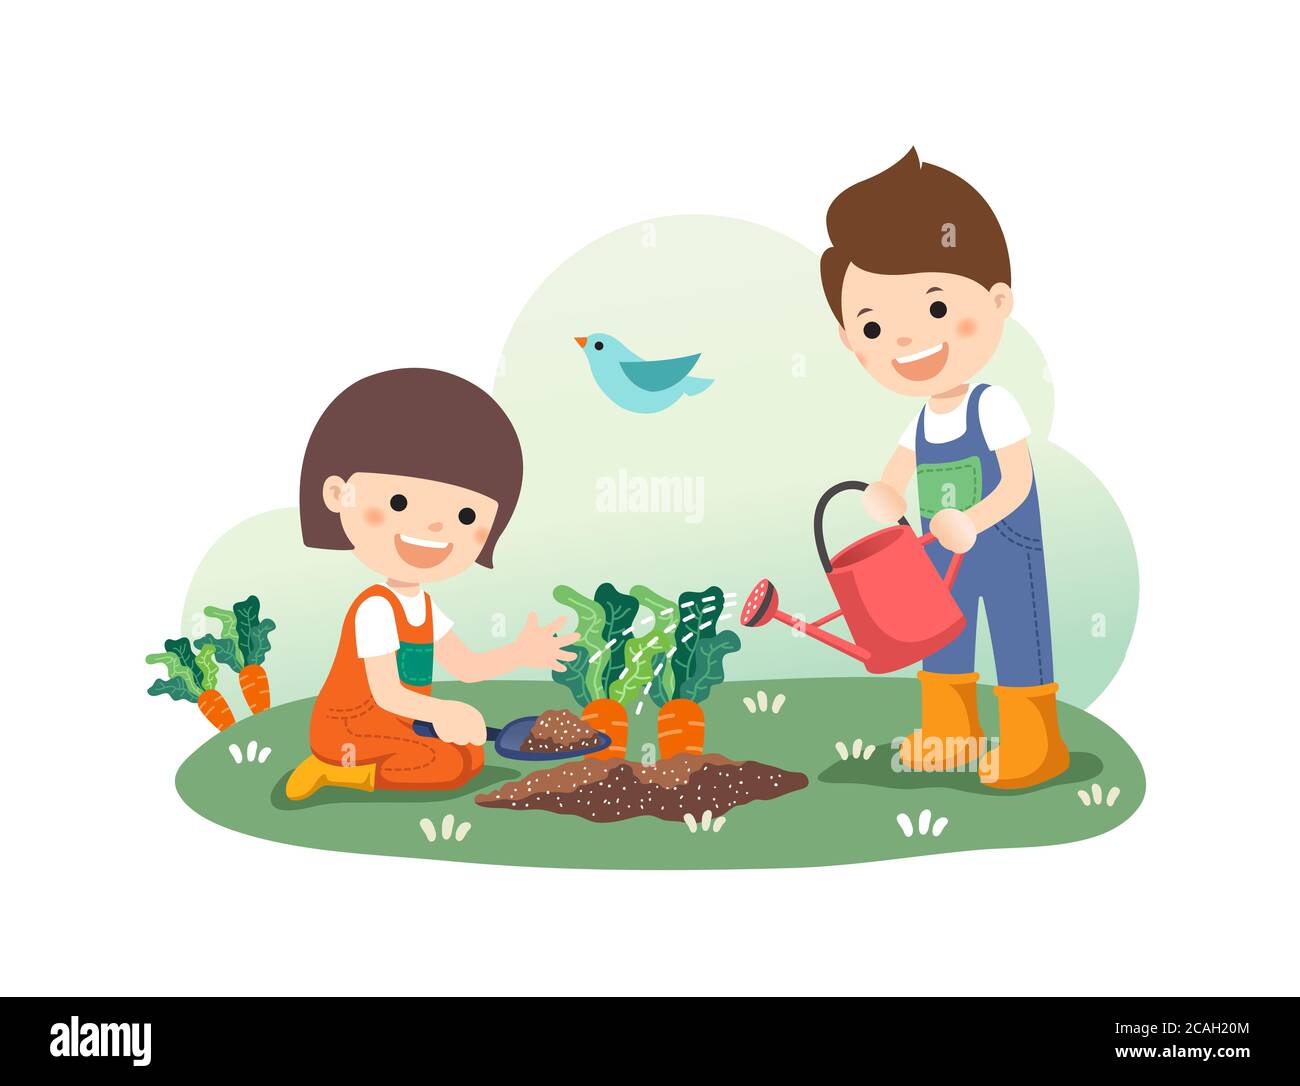 Educazione dei bambini, carino acqua giardini vegetali biologici. Sfondo bianco, illustrazione di Vactor. Illustrazione Vettoriale